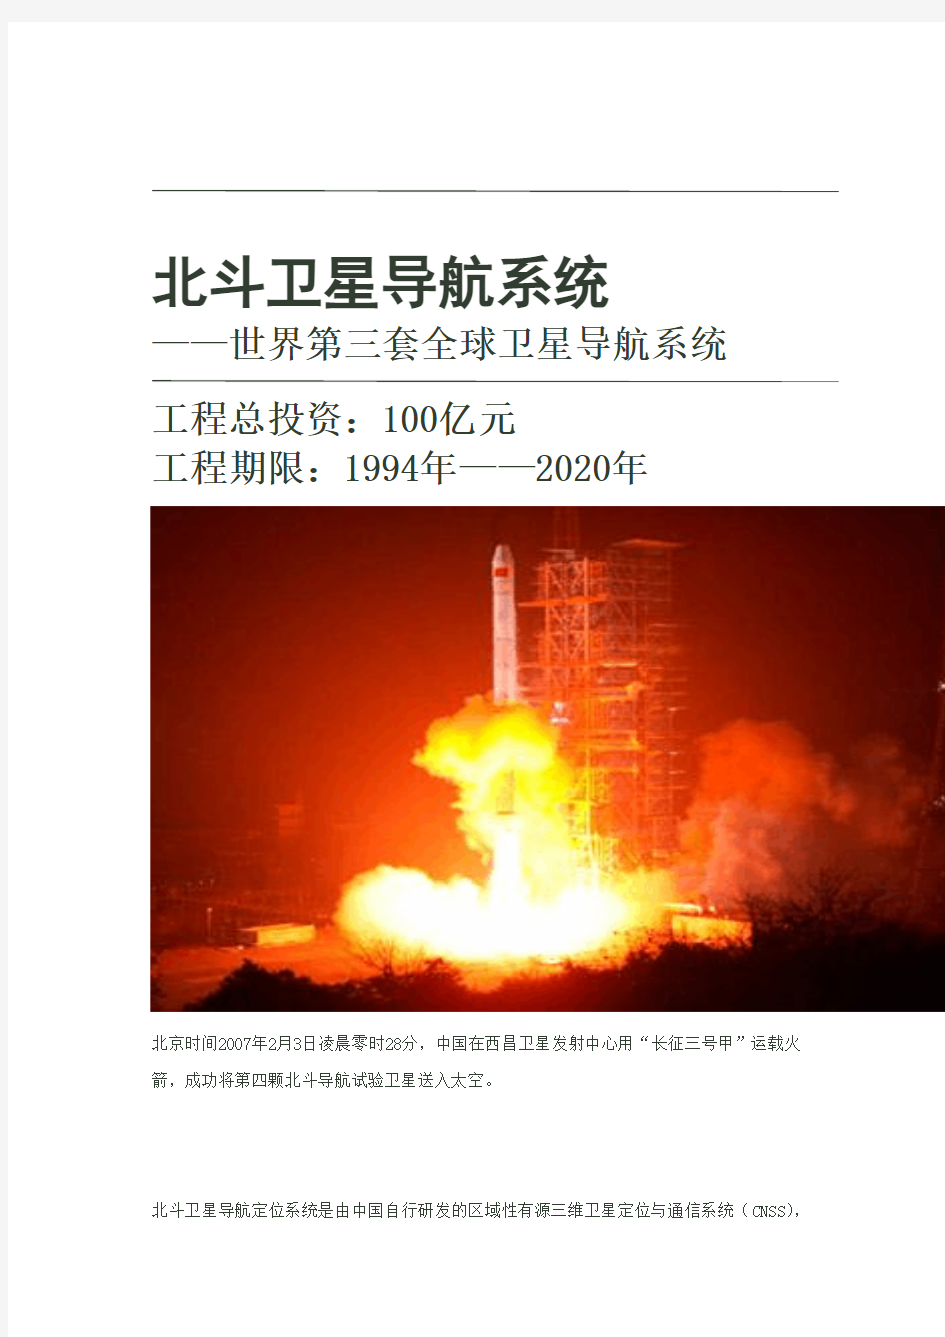 中国北斗卫星导航系统——世界第三套全球卫星导航系统(图)来自网络